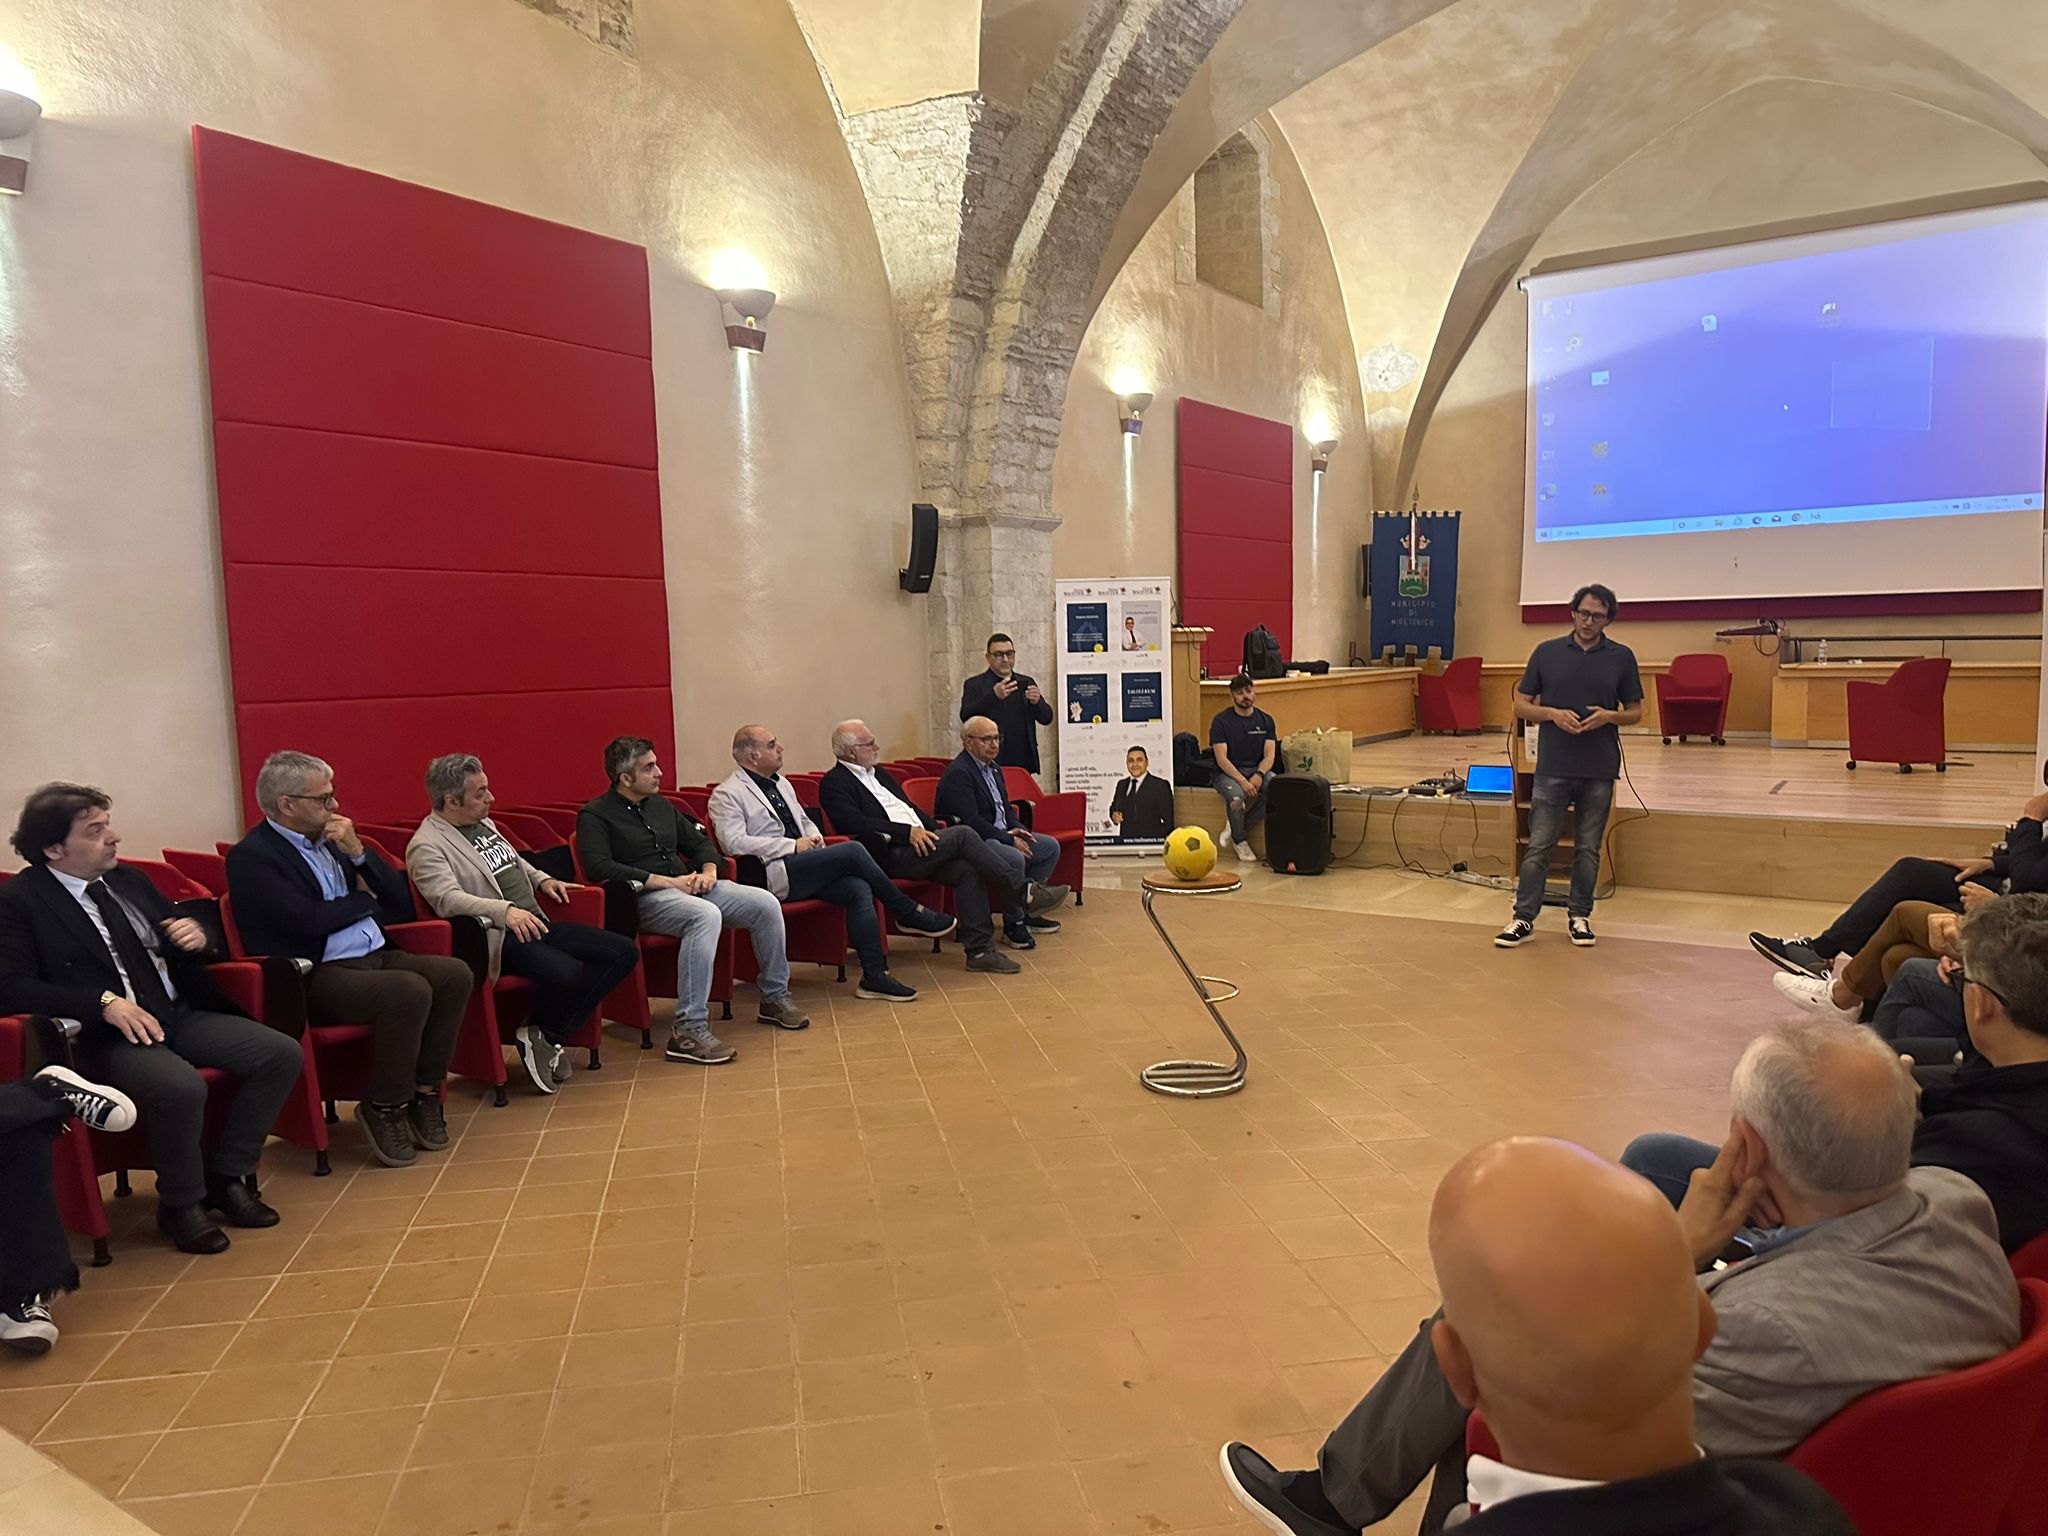 Federmanager Basilicata: con il workshop “Parole Potenti” i manager lucani sperimentano la comunicazione efficace al Castello del Malconsiglio